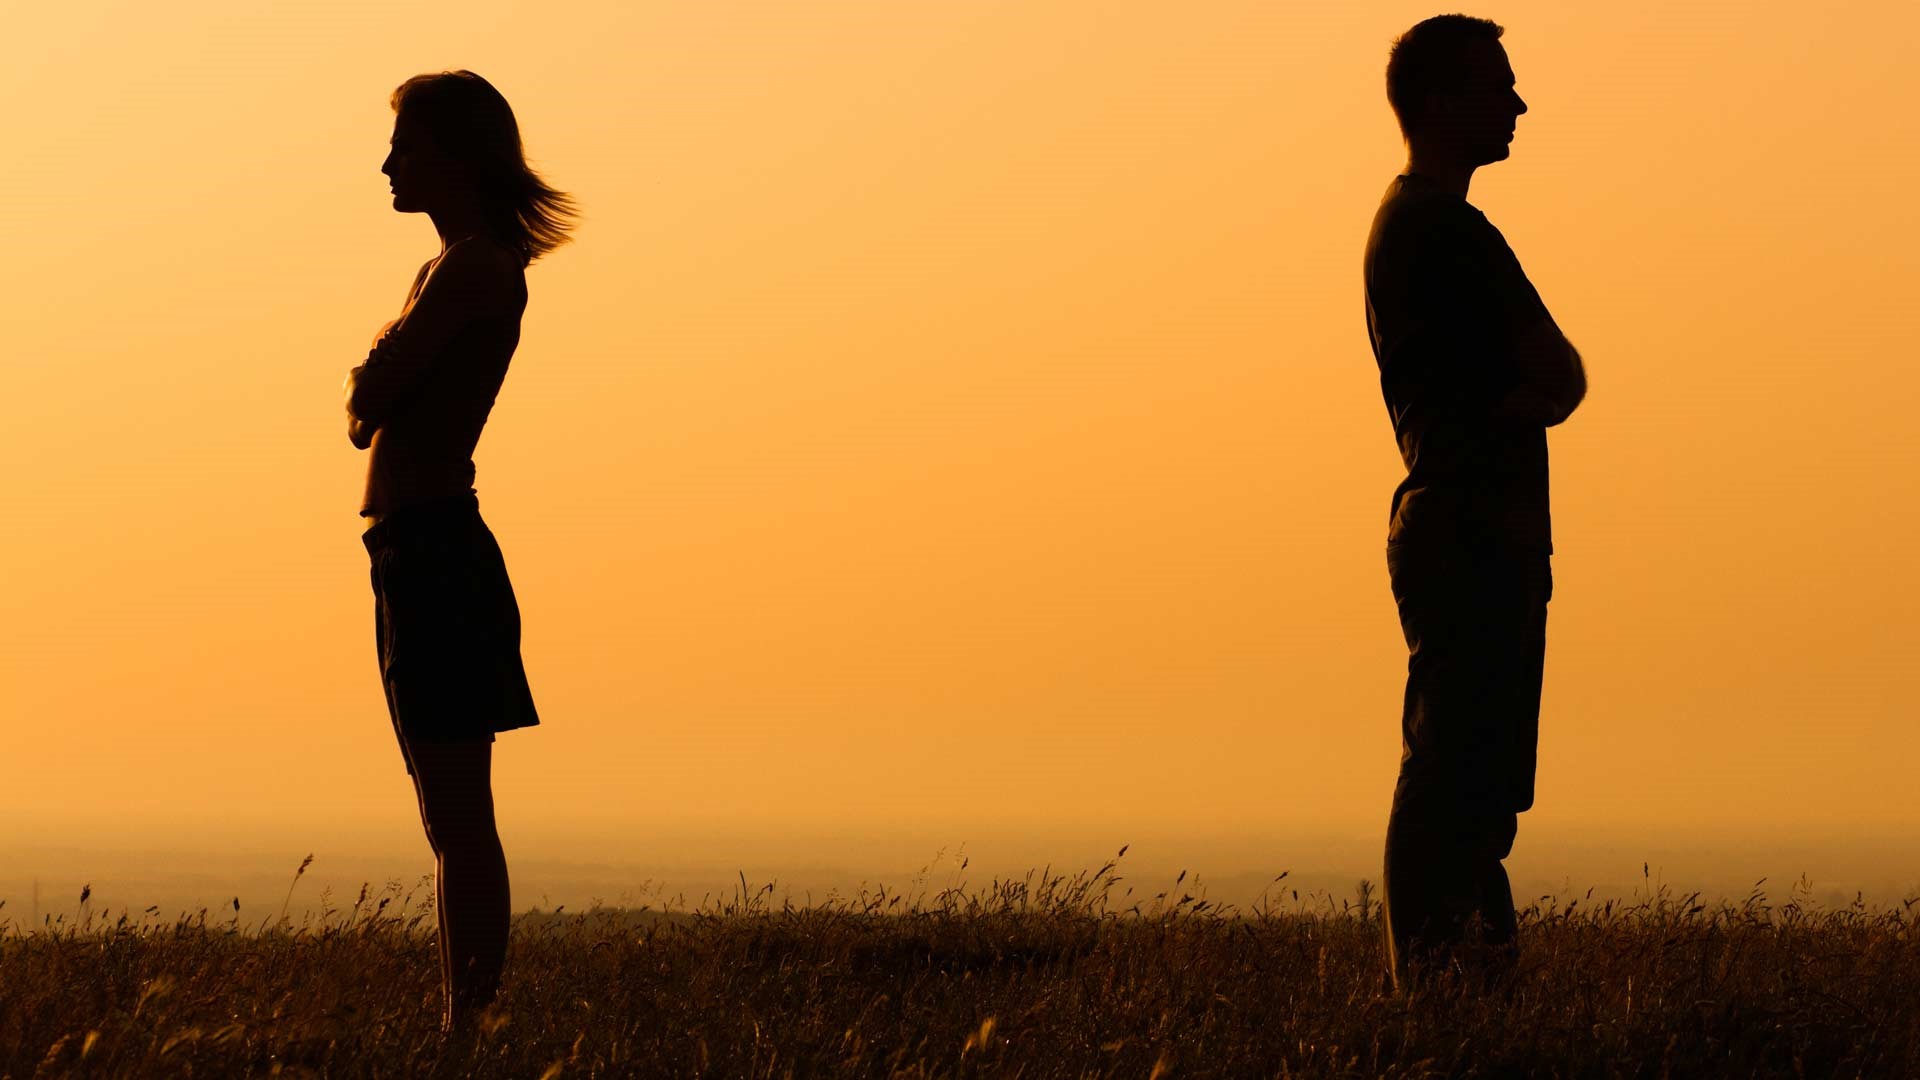 بلاتکلیف رها کردن زن در دوران عقد از دلایل طلاق است: